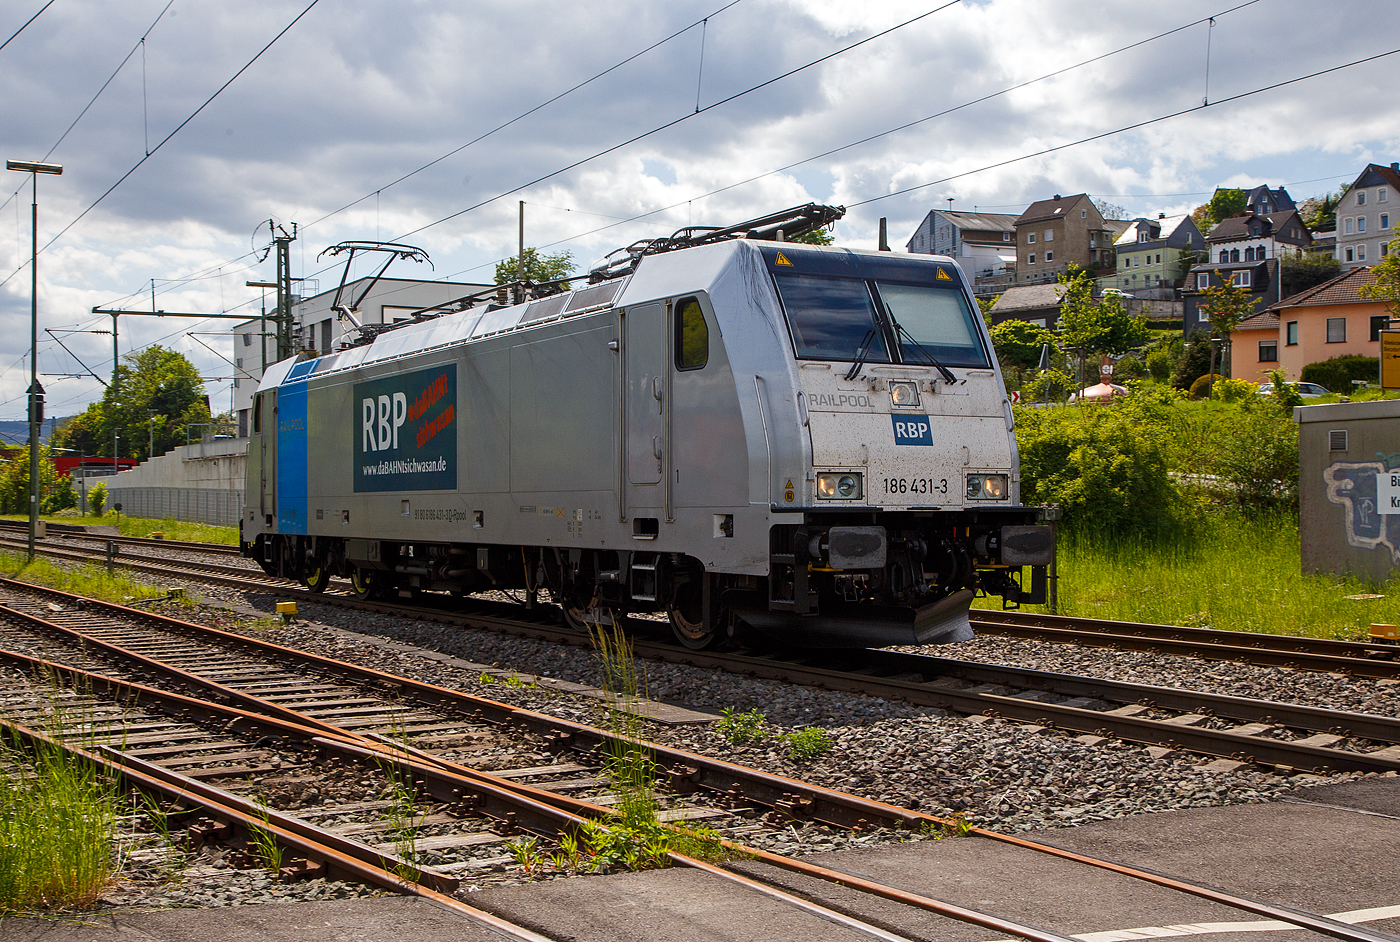 Die an die RBP - Rheinische Bahnpersonal- und Verkehrsgesellschaft mbH (Siegburg) vermietete Railpool 186 431-3  (91 80 6186 431-3 D-Rpool) fährt am 16.05.2023 als Lz (Lokzug) bzw. auf Tfzf (Triebfahrzeugfahrt) durch Niederschelden in Richtung Siegen. Hinweis ich stehe an der Schranke vom Bü 343 – km 112,183 der Siegstrecke.

Die Bombardier TRAXX F140 MS(2E) wurde 2015 von Bombardier in Kassel unter der Fabriknummer 35185 gebaut und an die Railpool GmbH (München) ausgeliefert. Die Multisystemlokomotive hat die Zulassungen bzw. besitzt die Länderpakete für Deutschland, Österreich, und Tschechien (D/A/CZ). Ursprünglich war sie für Polen, Slowakei, Ungarn und die Niederland (PL/SK/HU/NL) zugelassen, aber aktuell sind diese Länderkürzel an die Lok durchgestrichen.


Der derzeitige Mieter die RBP - Rheinische Bahnpersonal- und Verkehrsgesellschaft mbH in Siegburg, ist eine junge und moderne Eisenbahnverkehrsgesellschaft, speziell für Bahn- und Verkehrsbetriebe. 